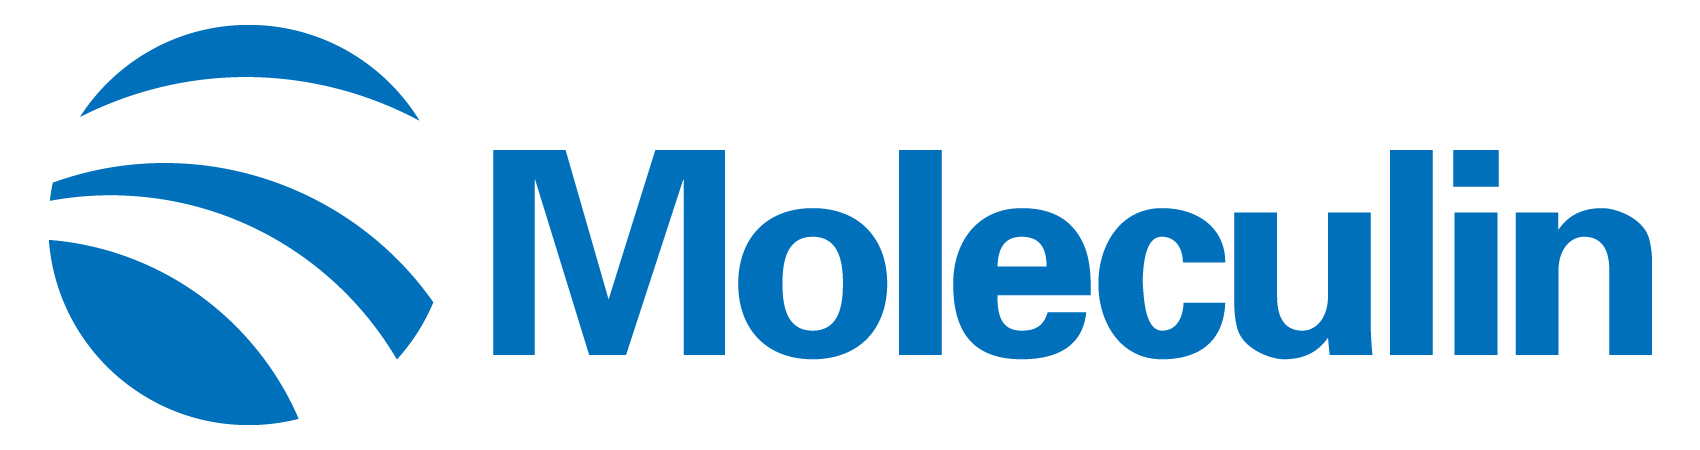 moleculin-logo_horiza19.jpg